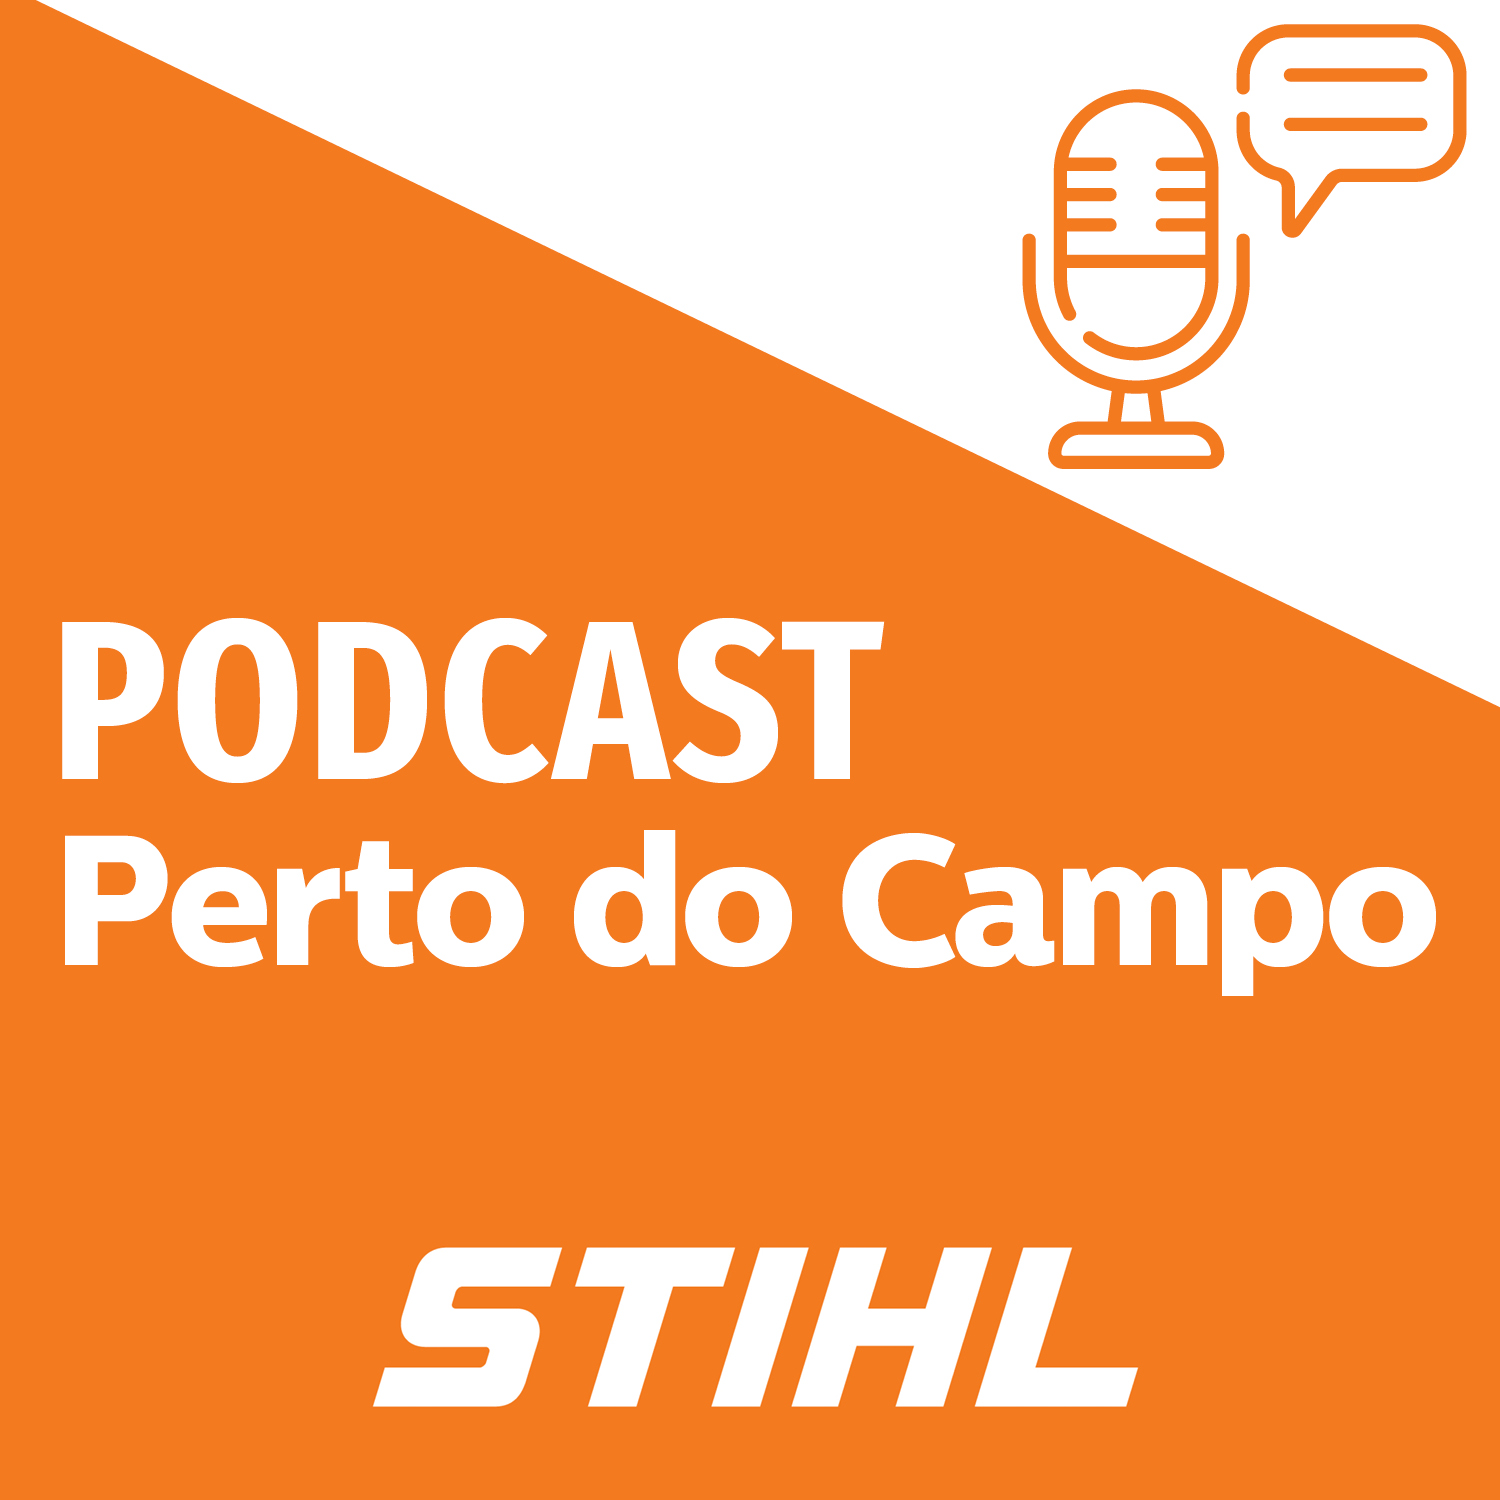 Conteúdo patrocinado: Podcast Stihl #01 - Tecnologia no Agro